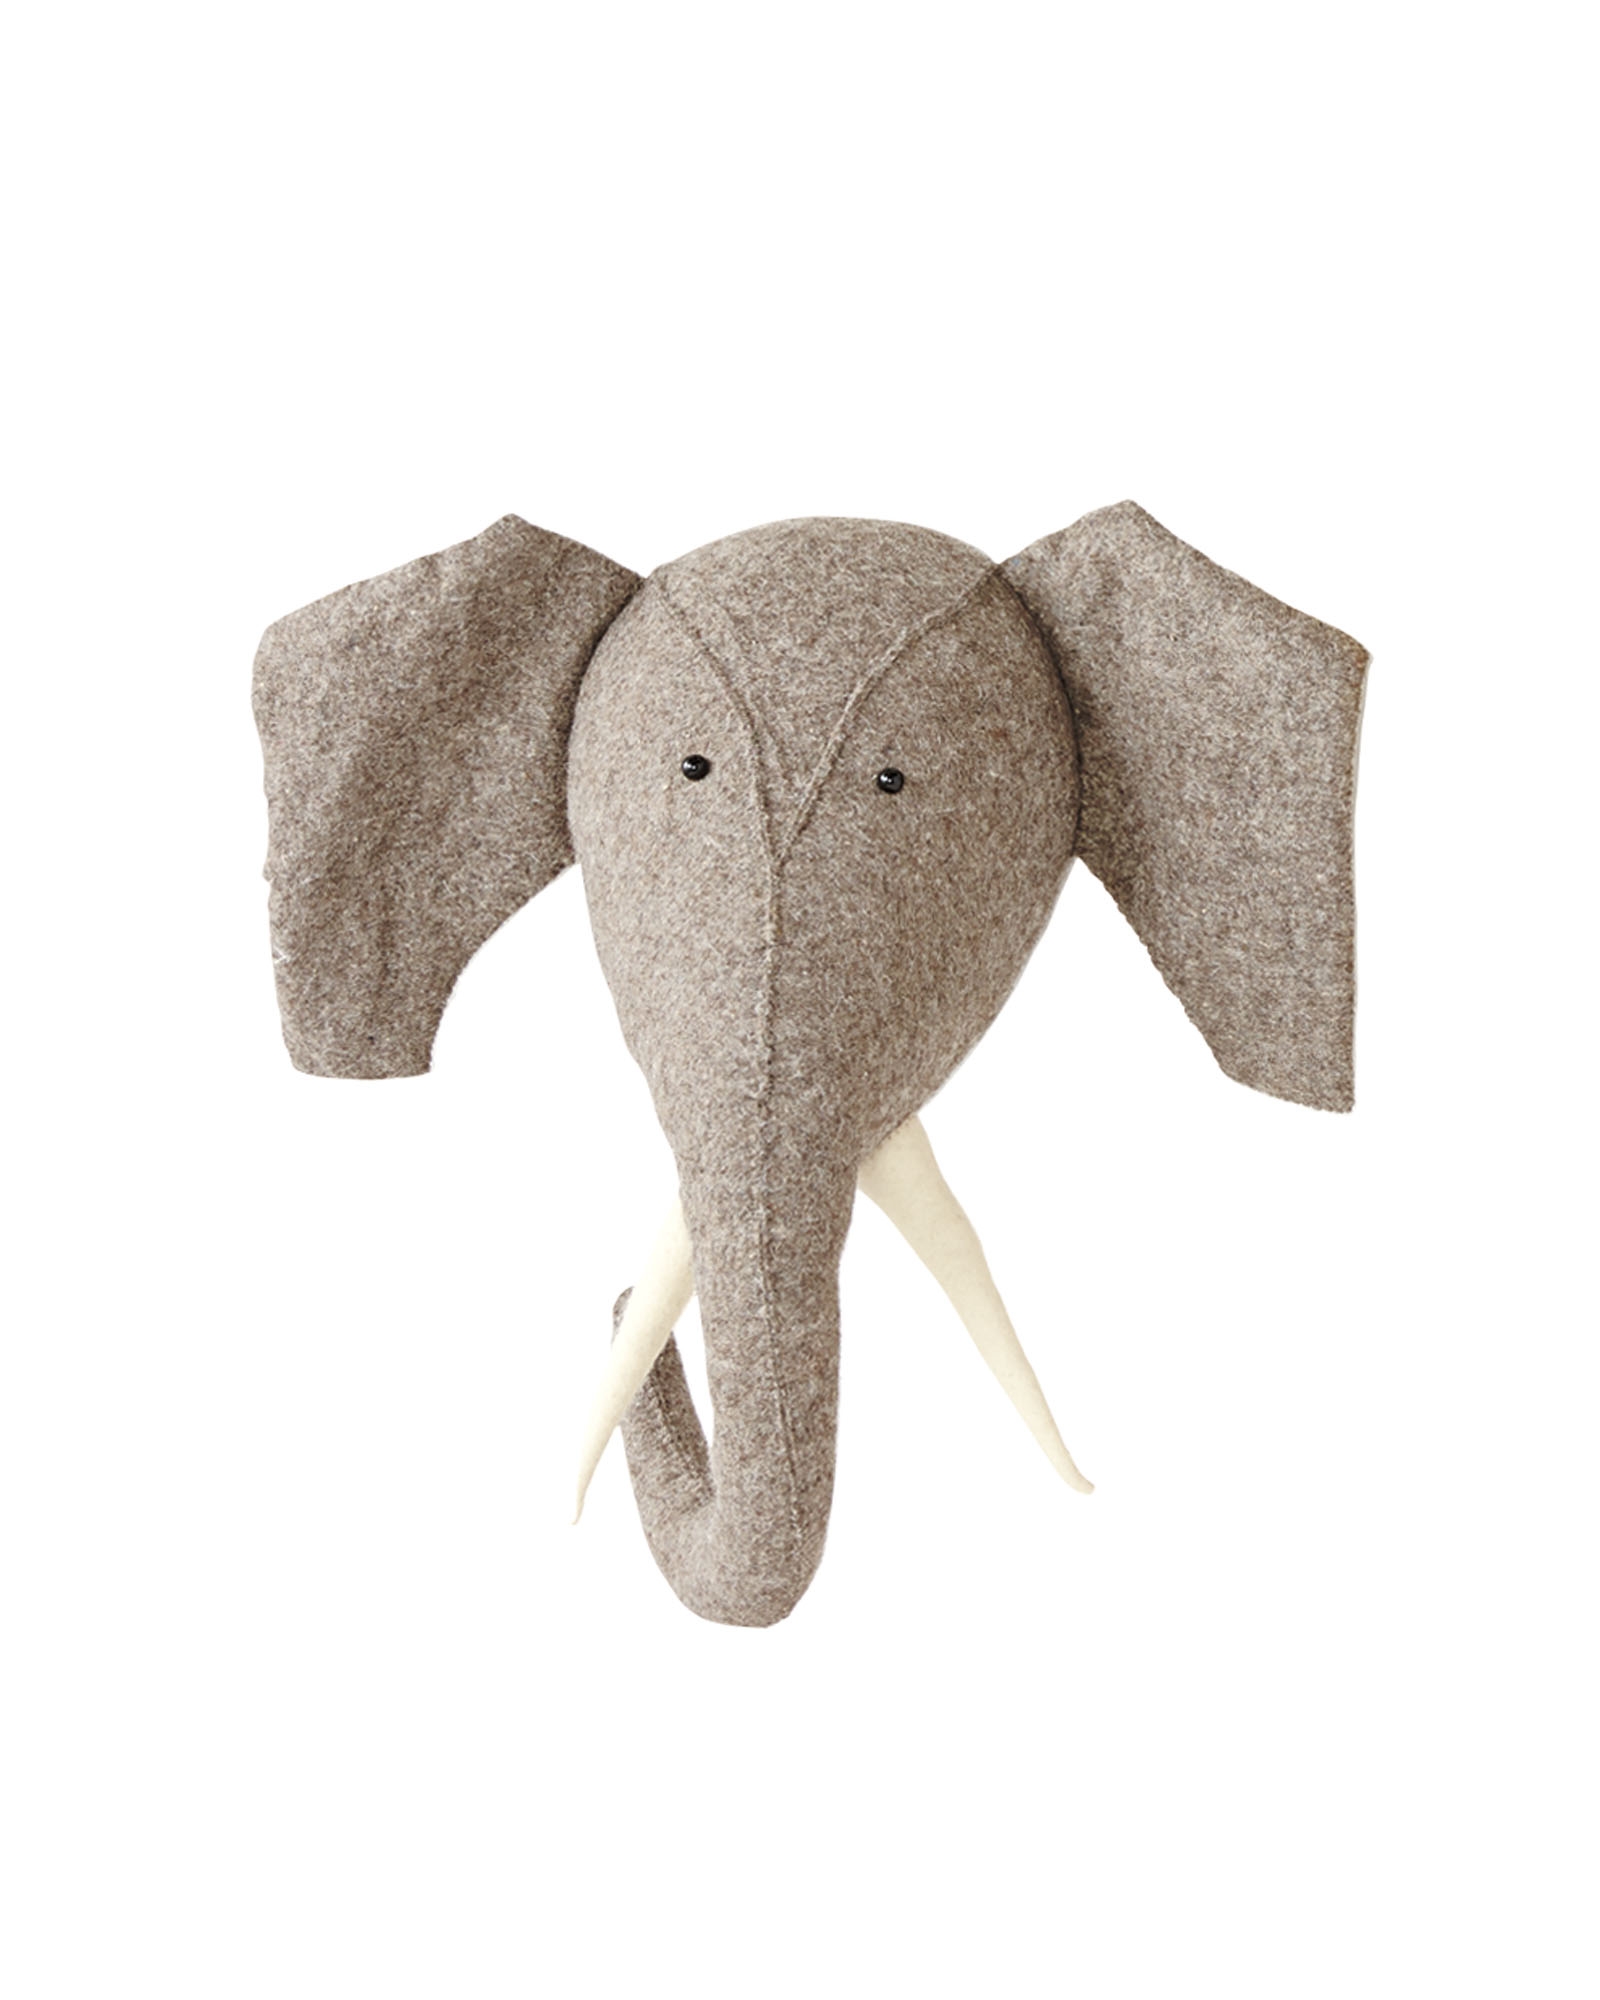 Mounted Elephant - Image 0